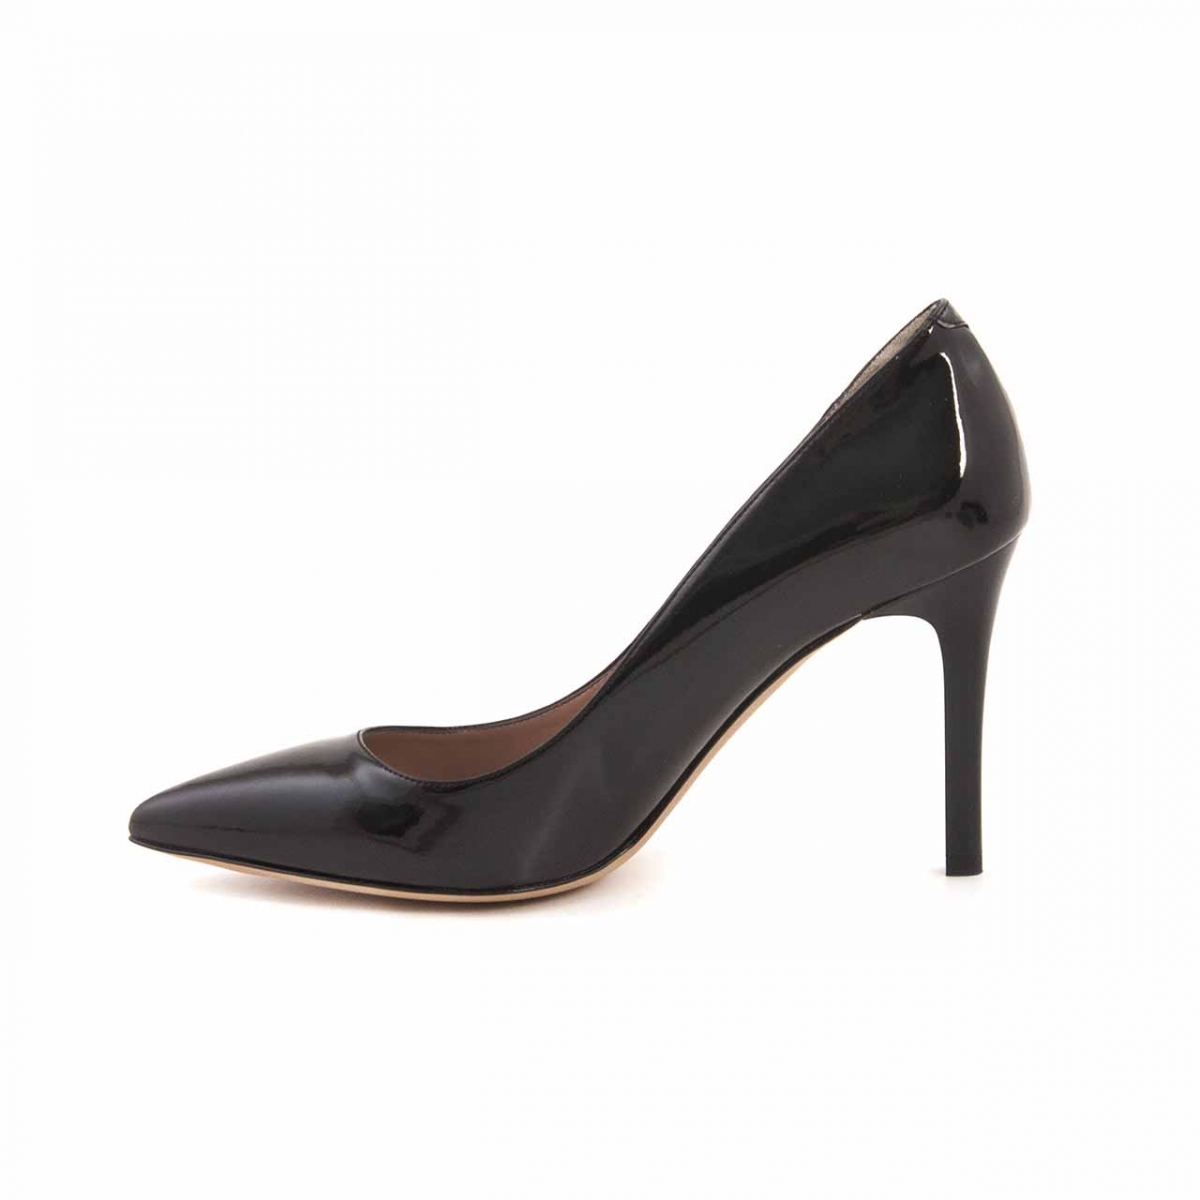 Flo Deri Stiletto Kadın Klasik Ayakkabı 21761. 3